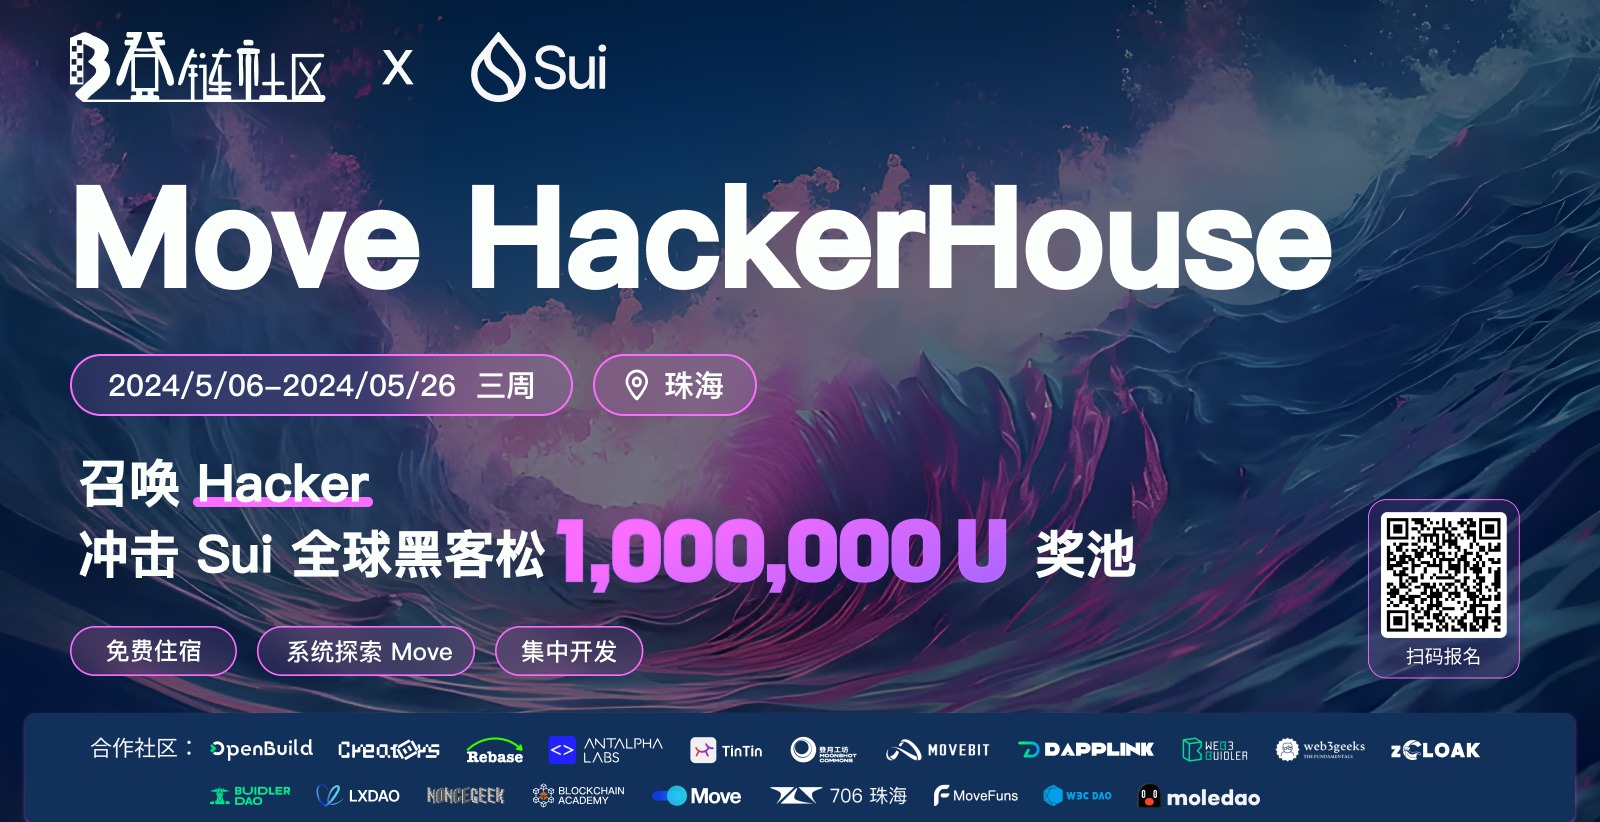 面朝大海，春暖花开|珠海邀你面向 Sui 黑客松 100 万奖池来一场 HackerHouse 之旅